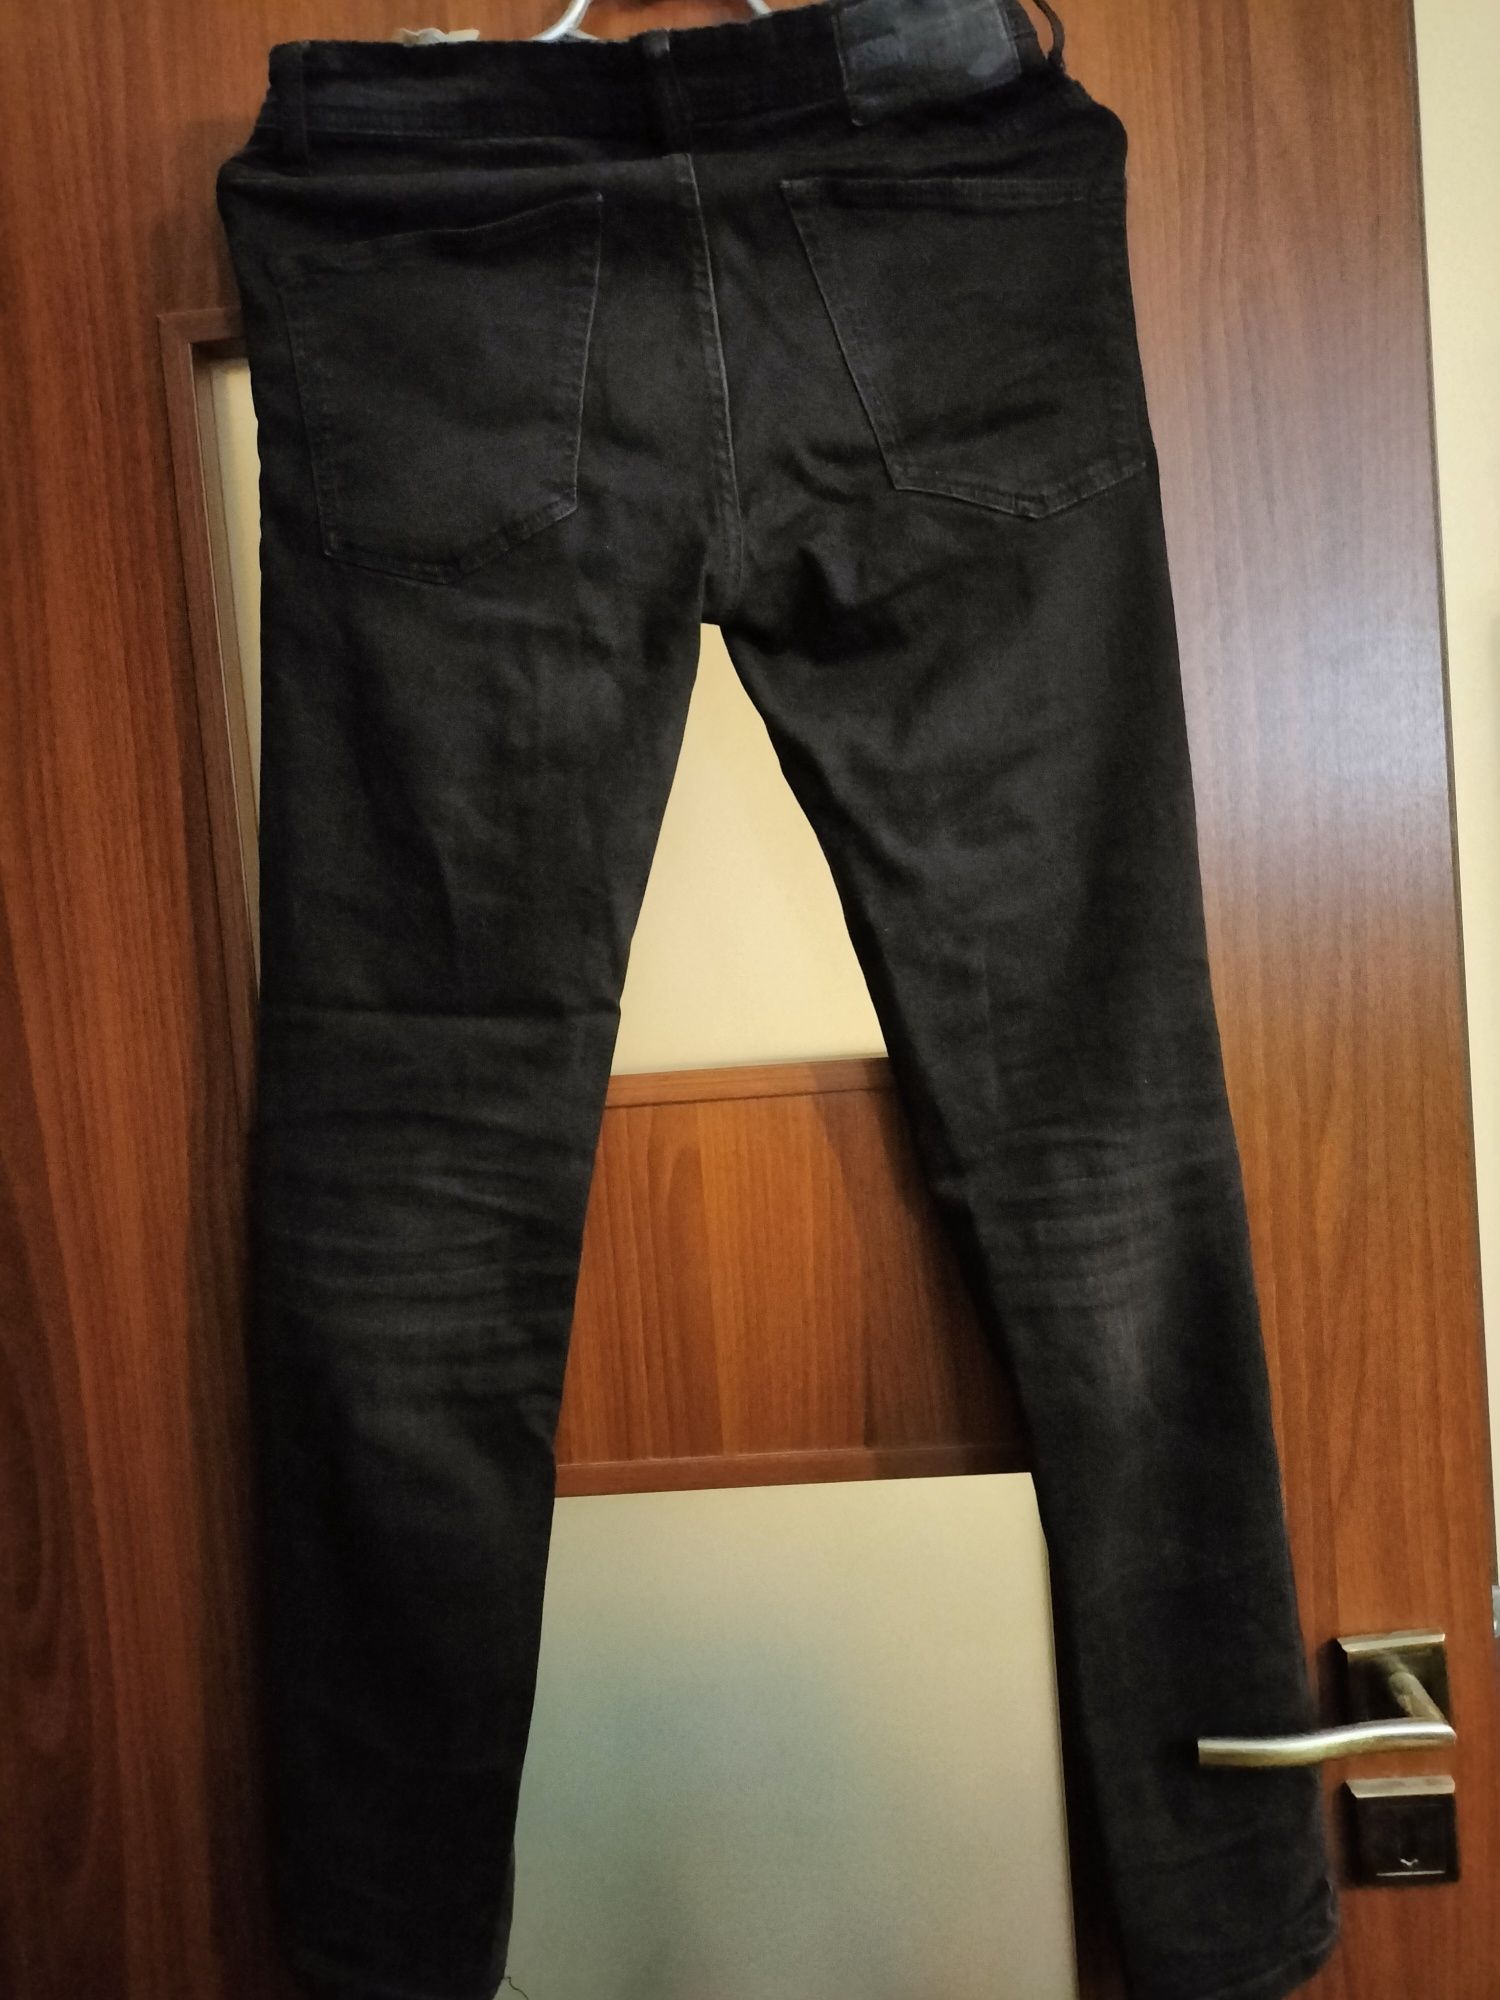 Spodnie jeansowe czarne FSBN 29/30